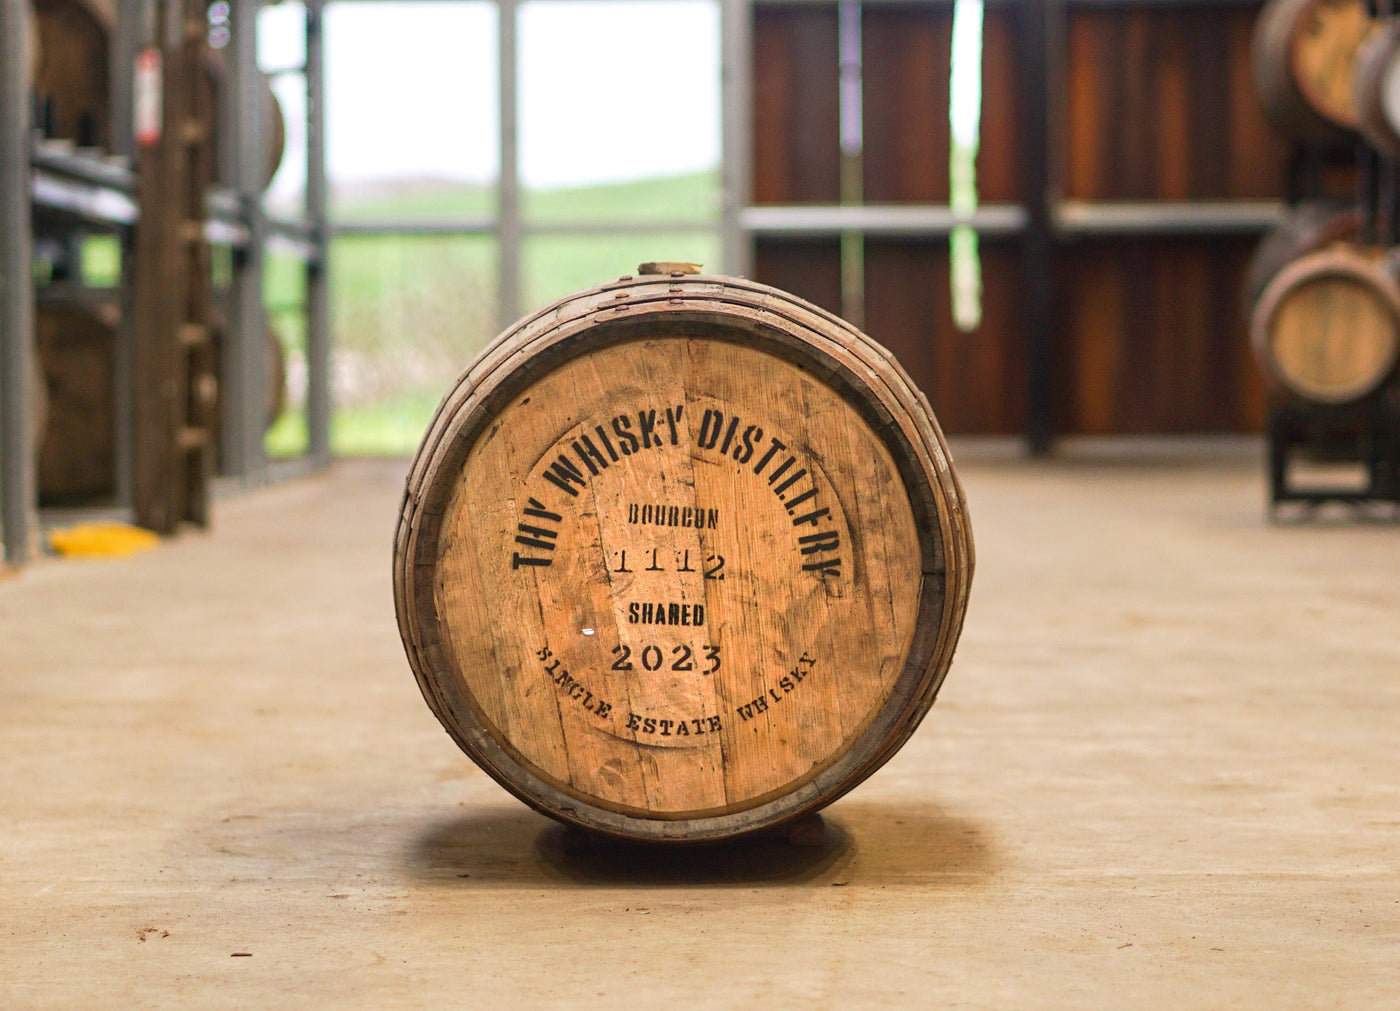 Fadandel – Imperial byg på bourbon fad